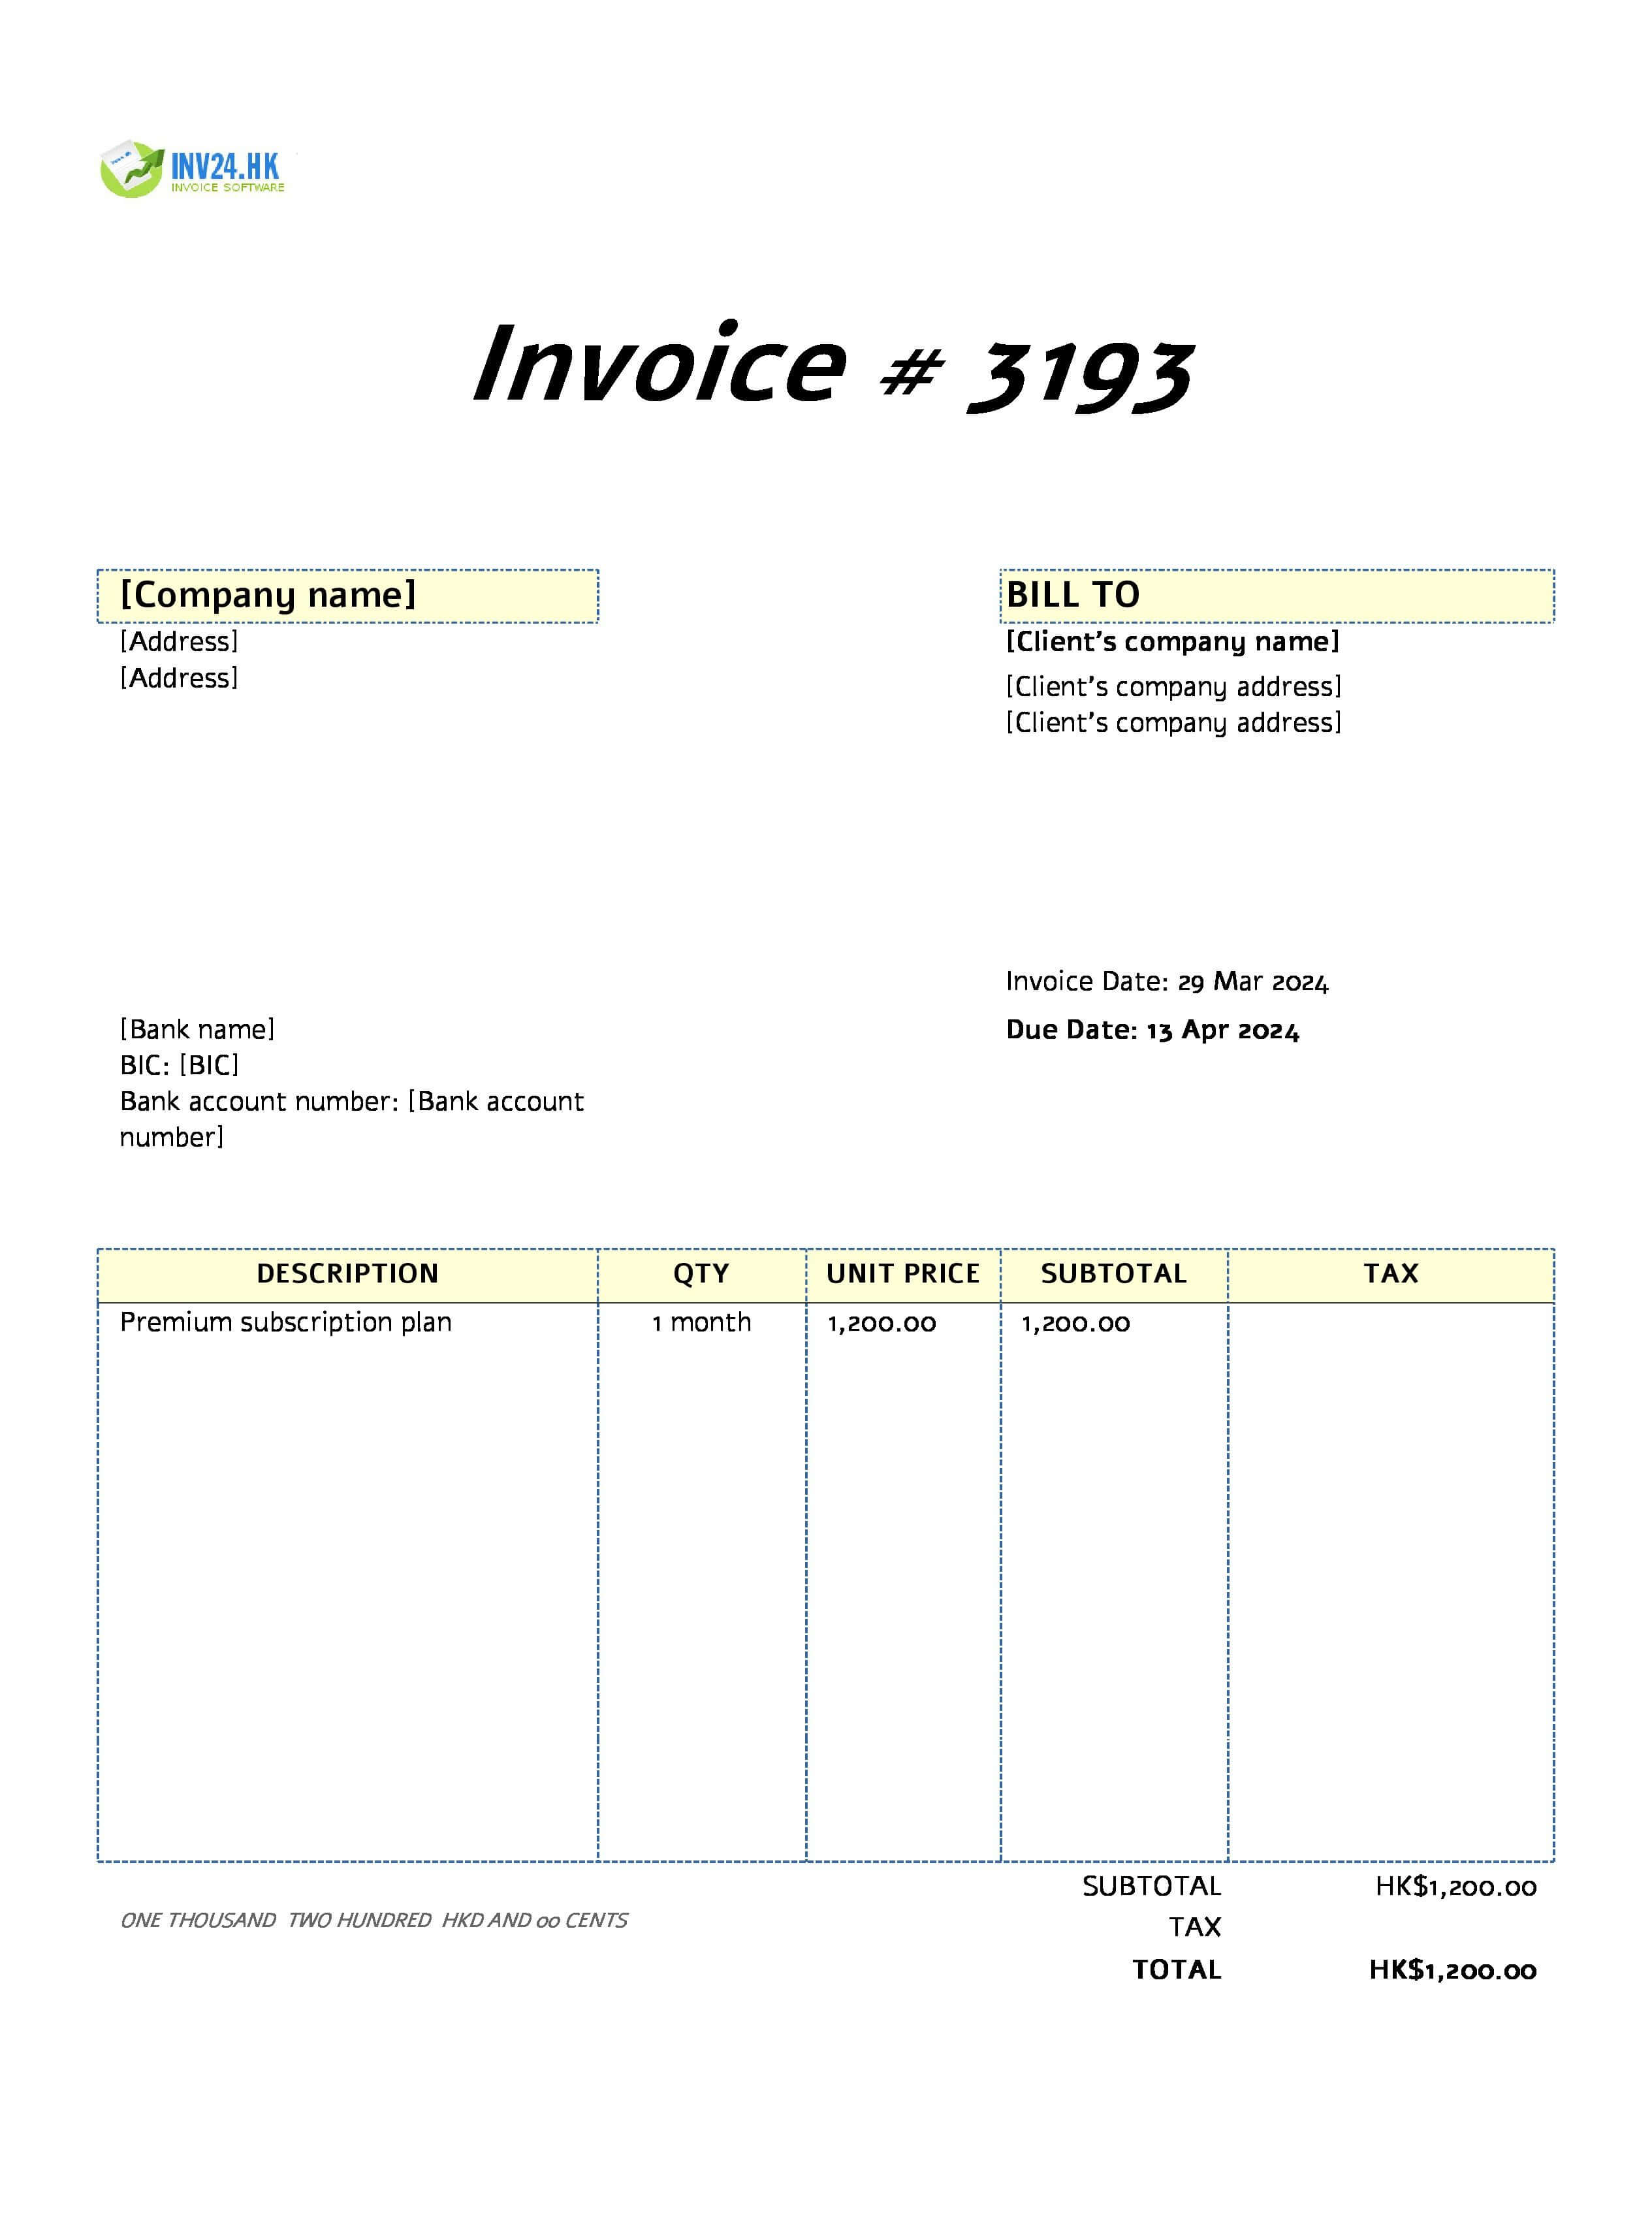 batch invoice example